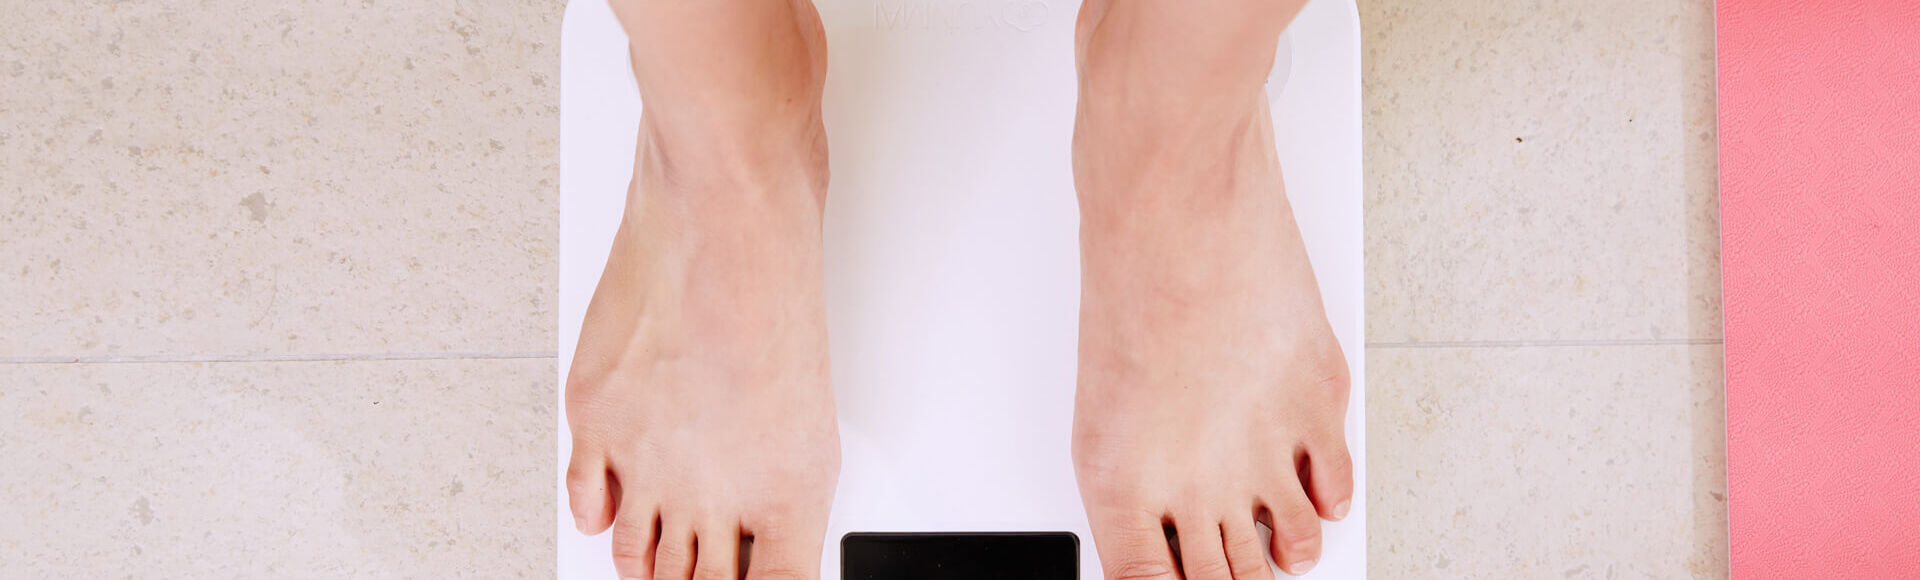 Pessoa se pesando em balança. A foto mostra os pés sobre balança de uso doméstico.